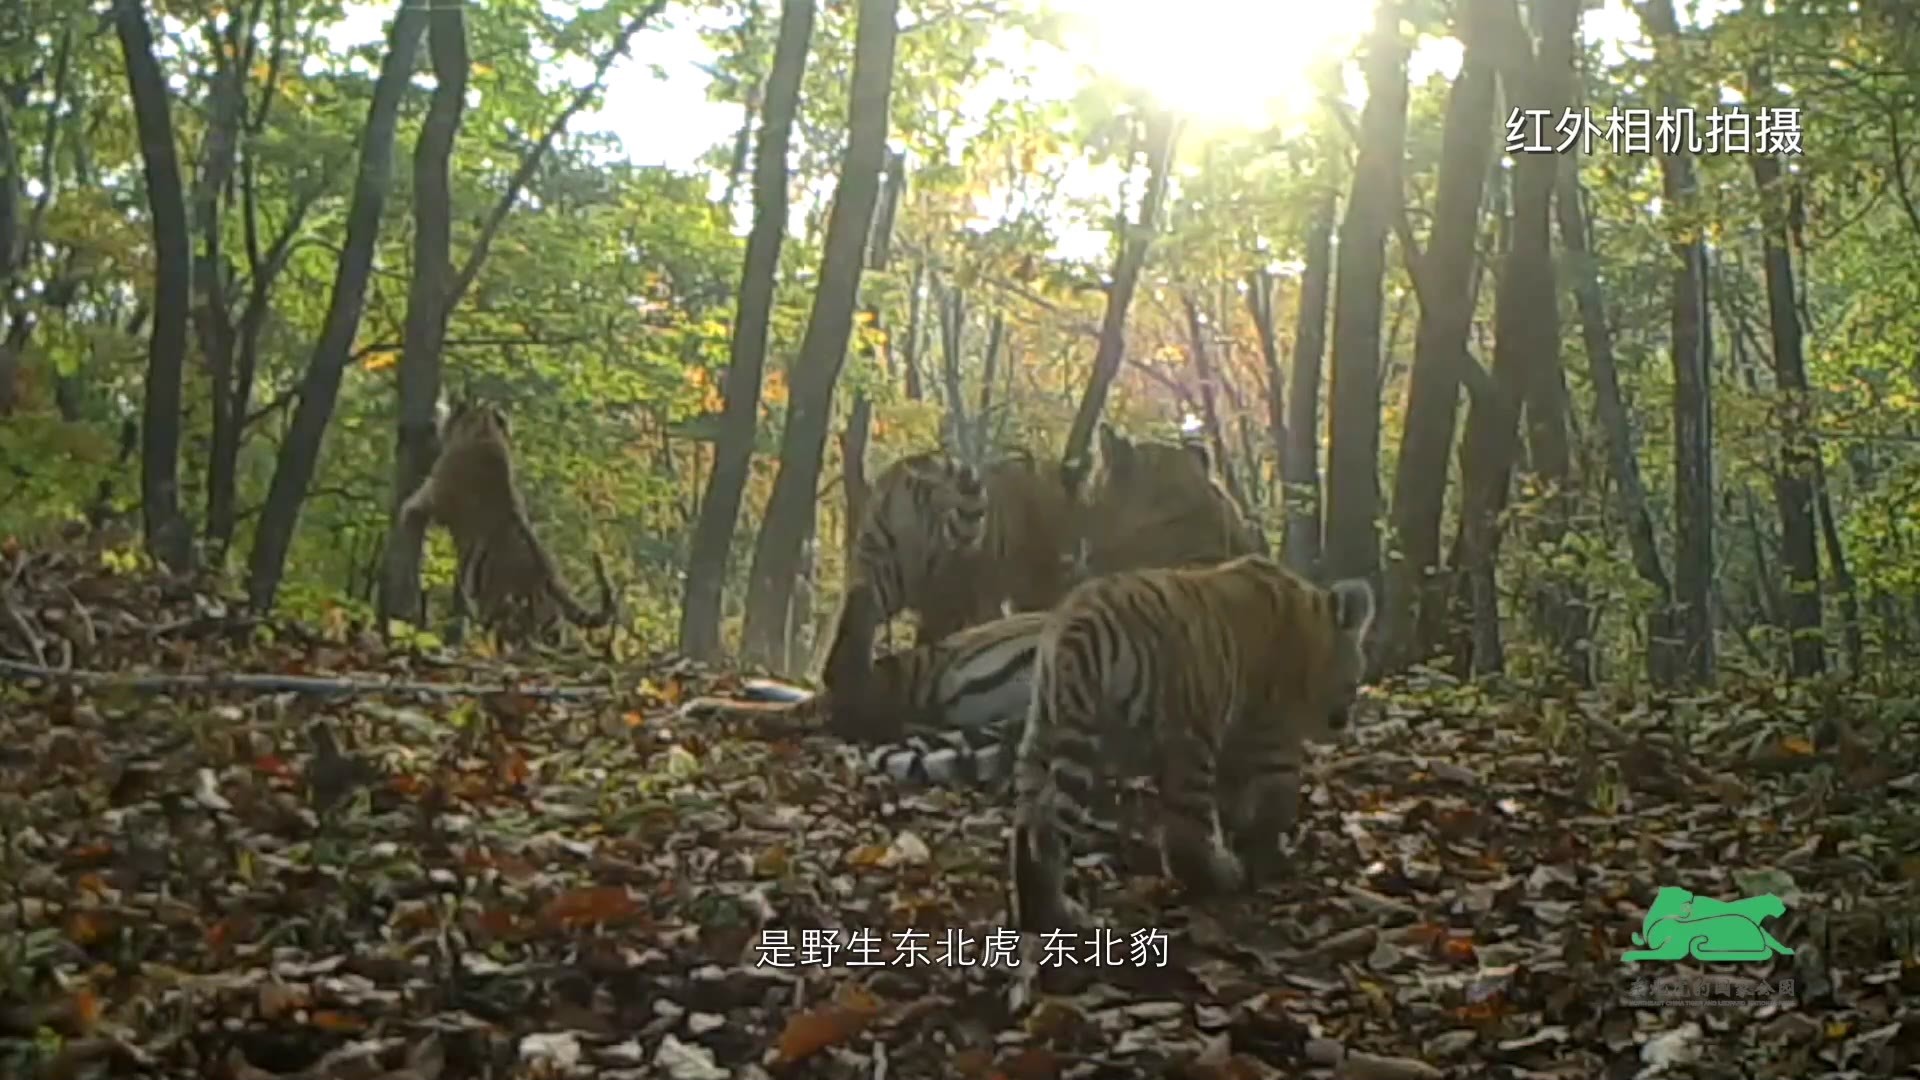 545 | 中国野生东北虎豹保护迎来最好时代